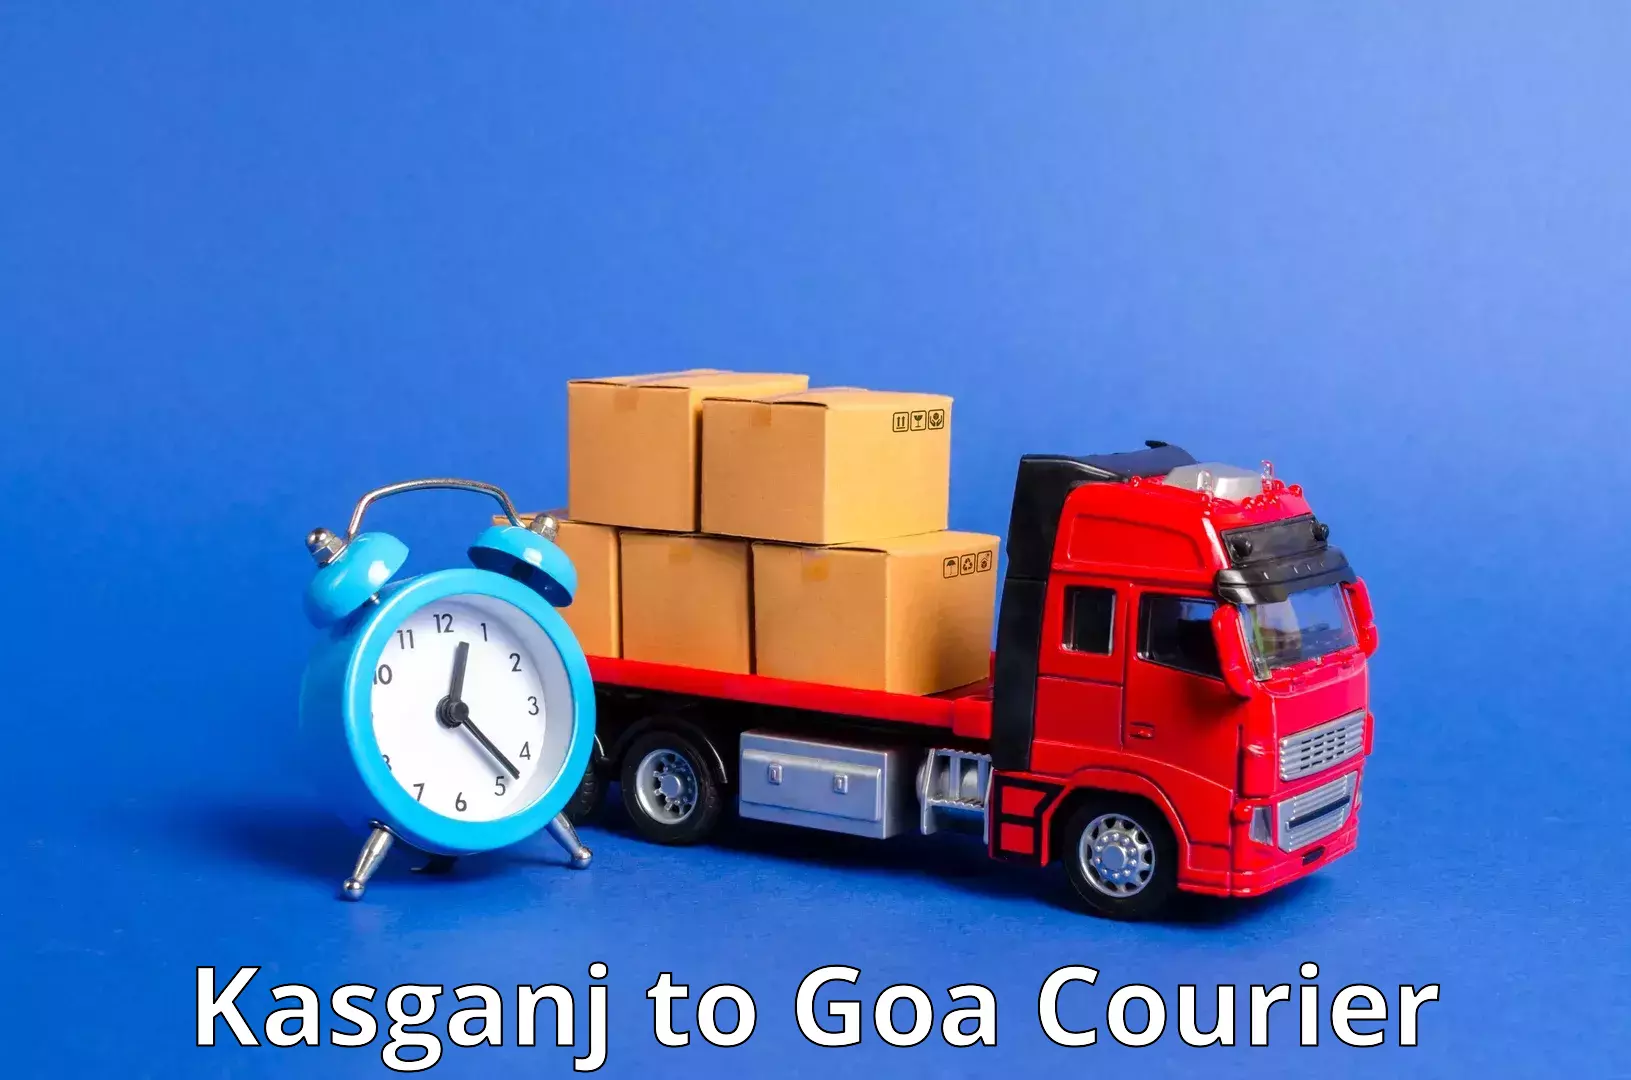 Seamless shipping service Kasganj to Panjim